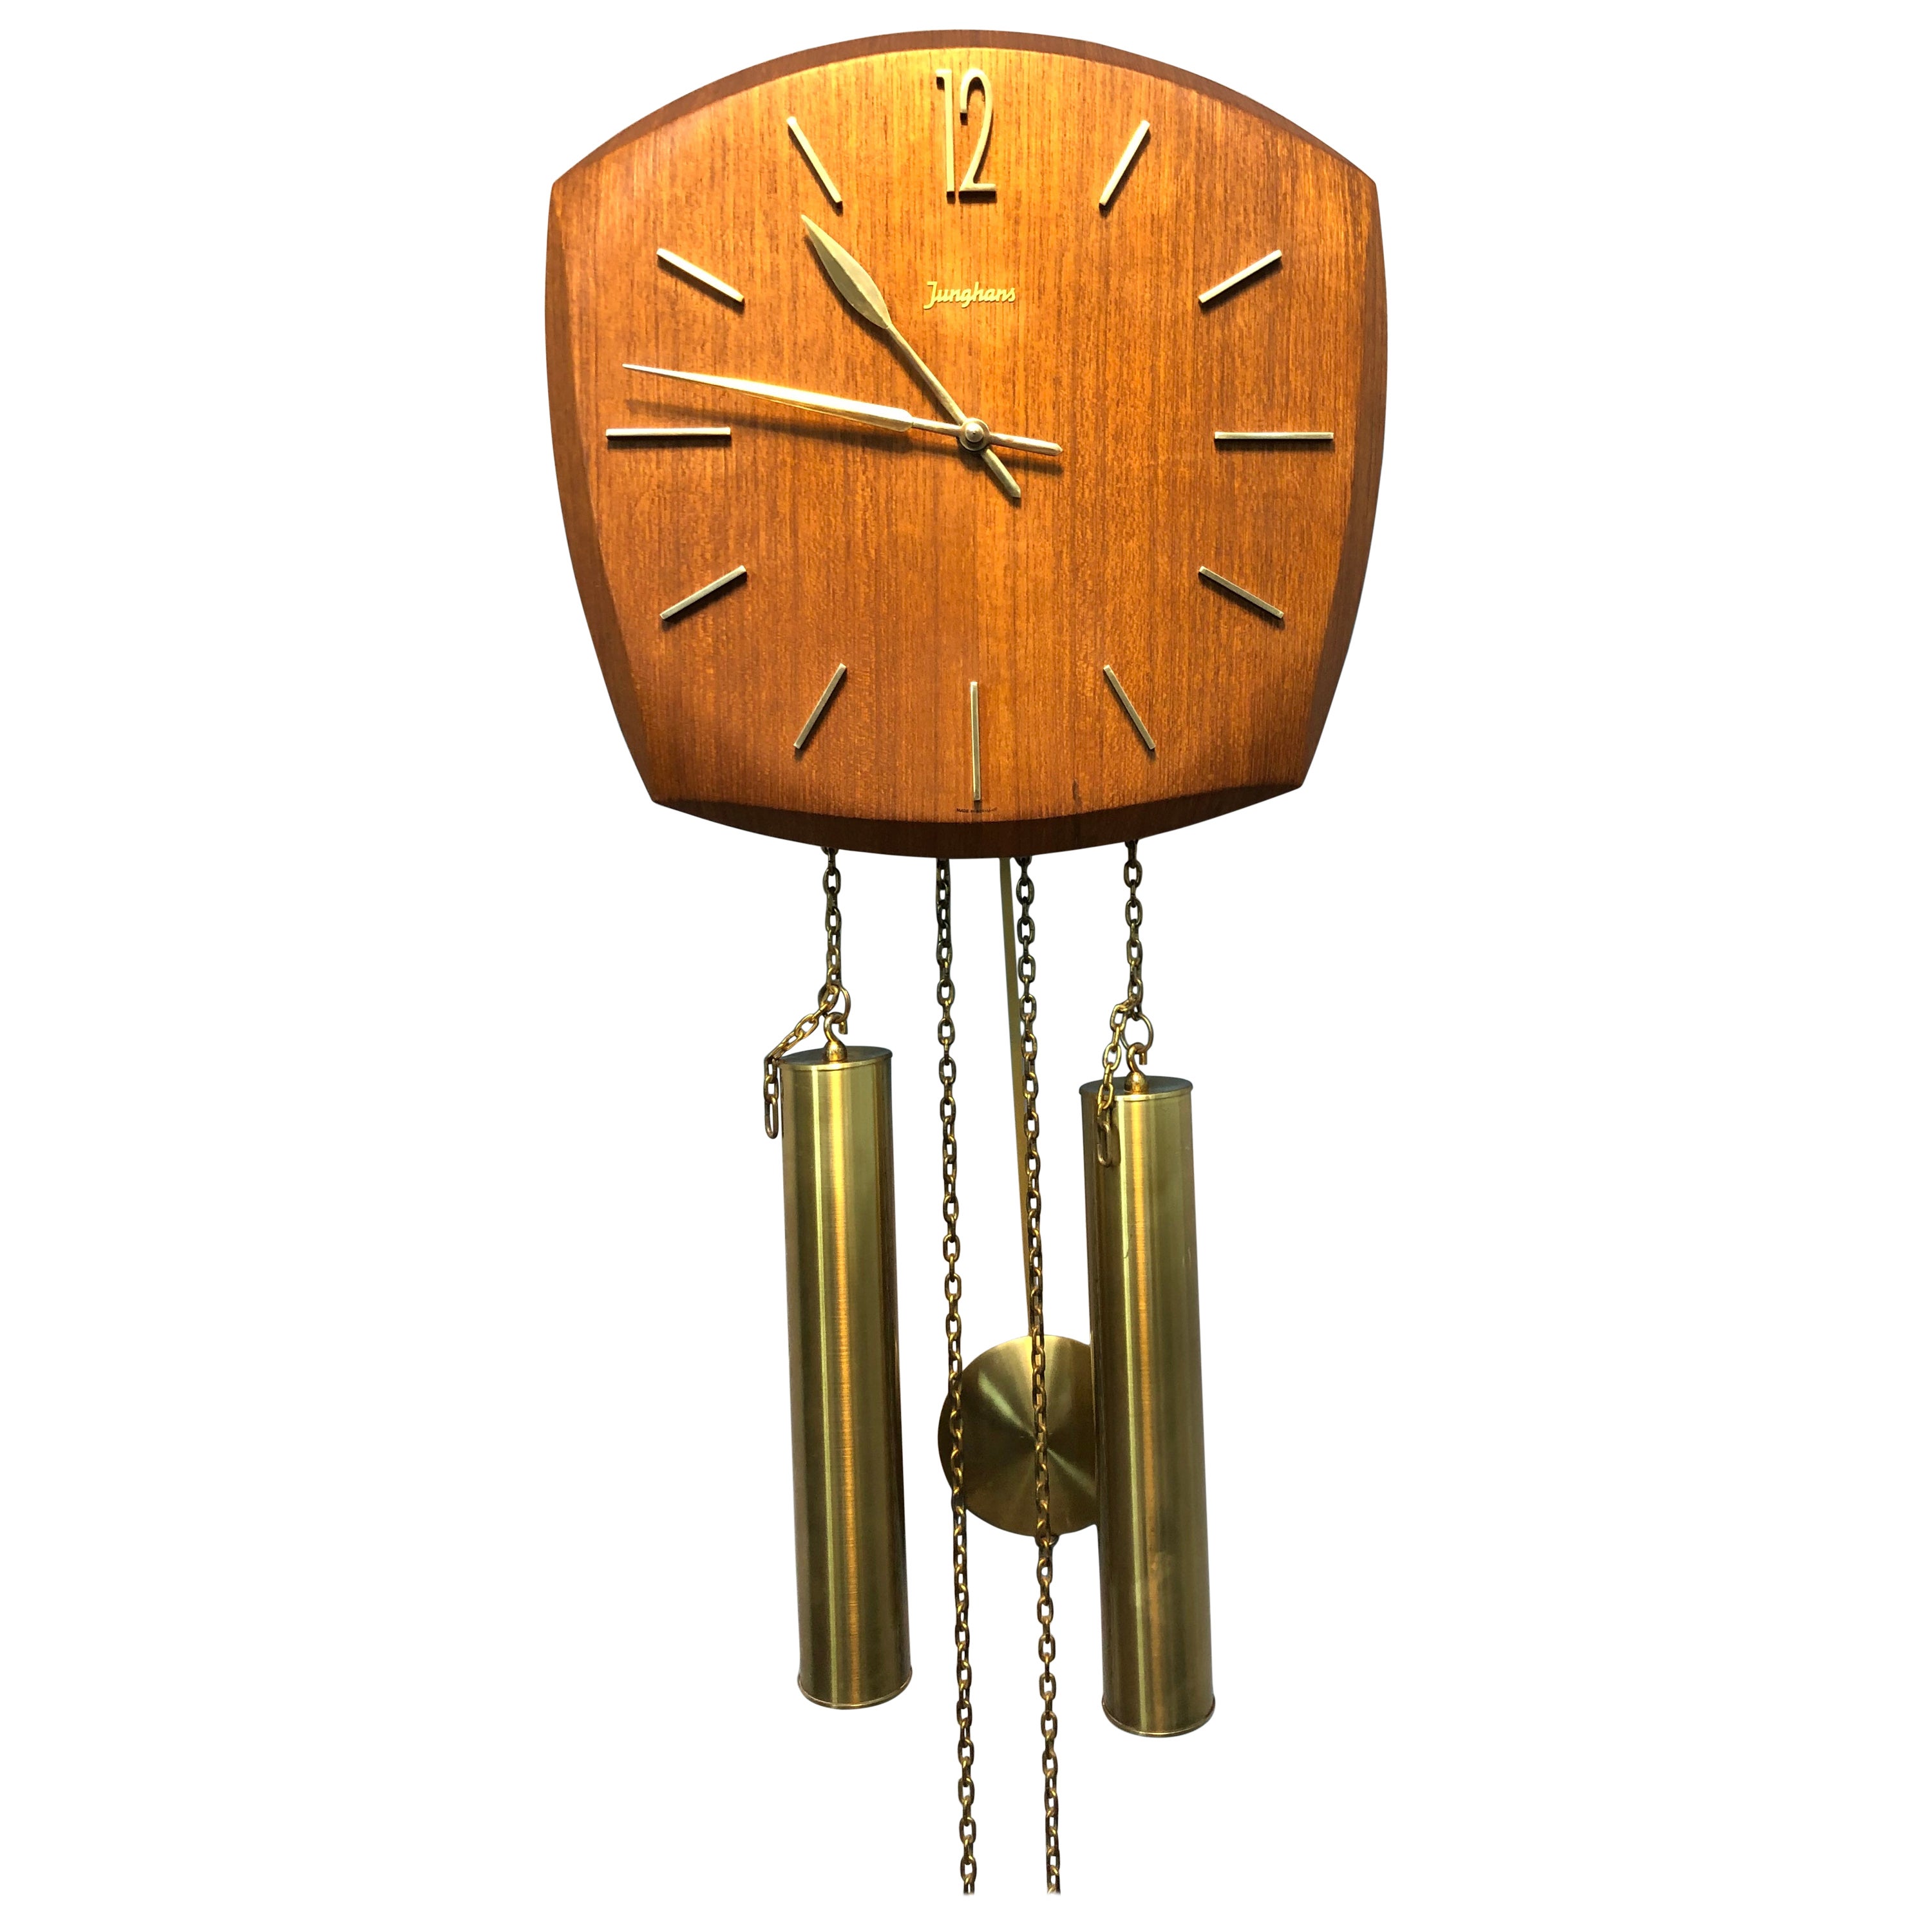 Vintage Junghans Pendulum Wall Clock in Teak Veneer from the 1960s